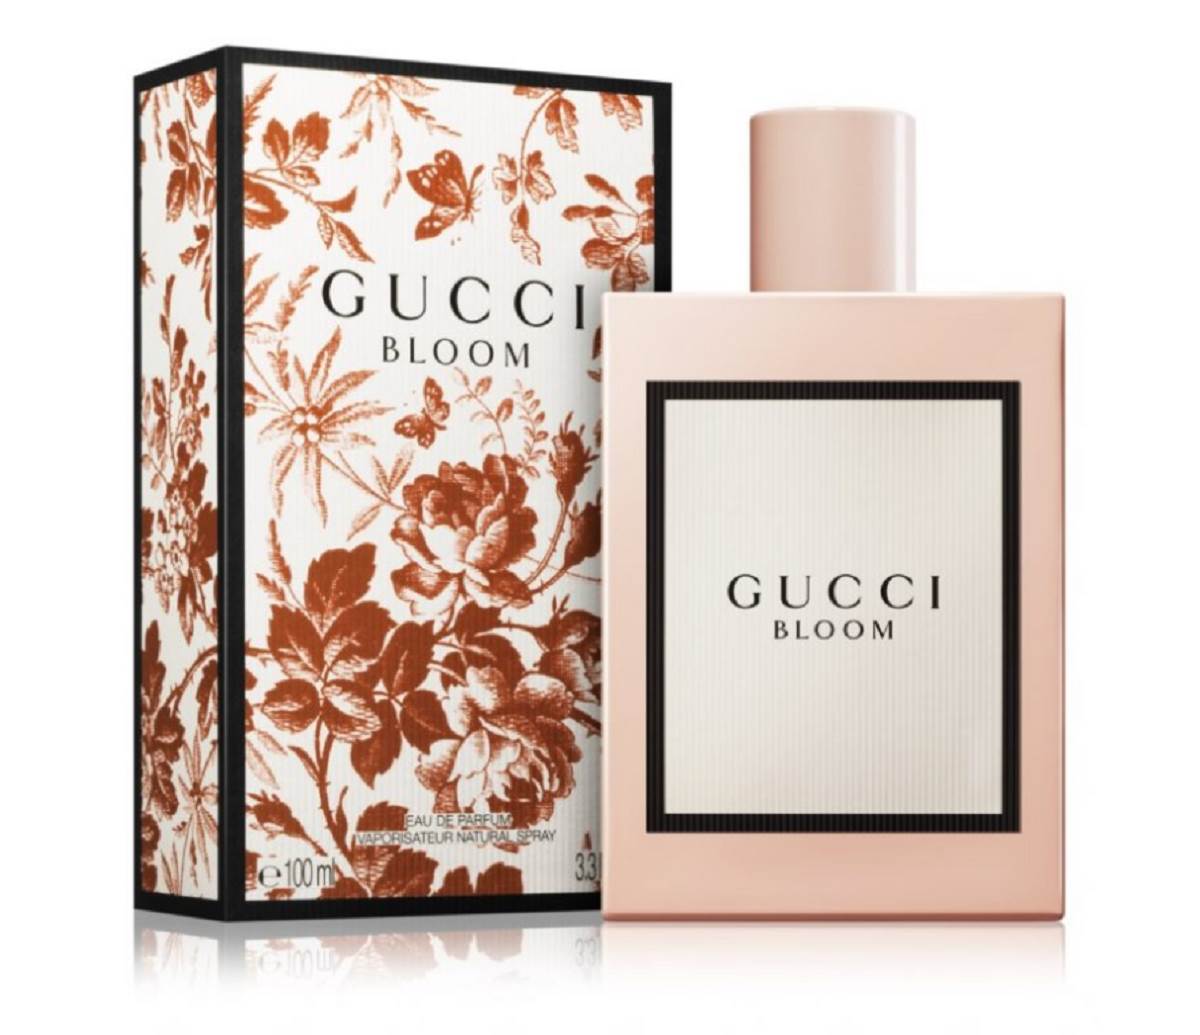  Gucci Bloom je prelep cvetni miris za proleće. 